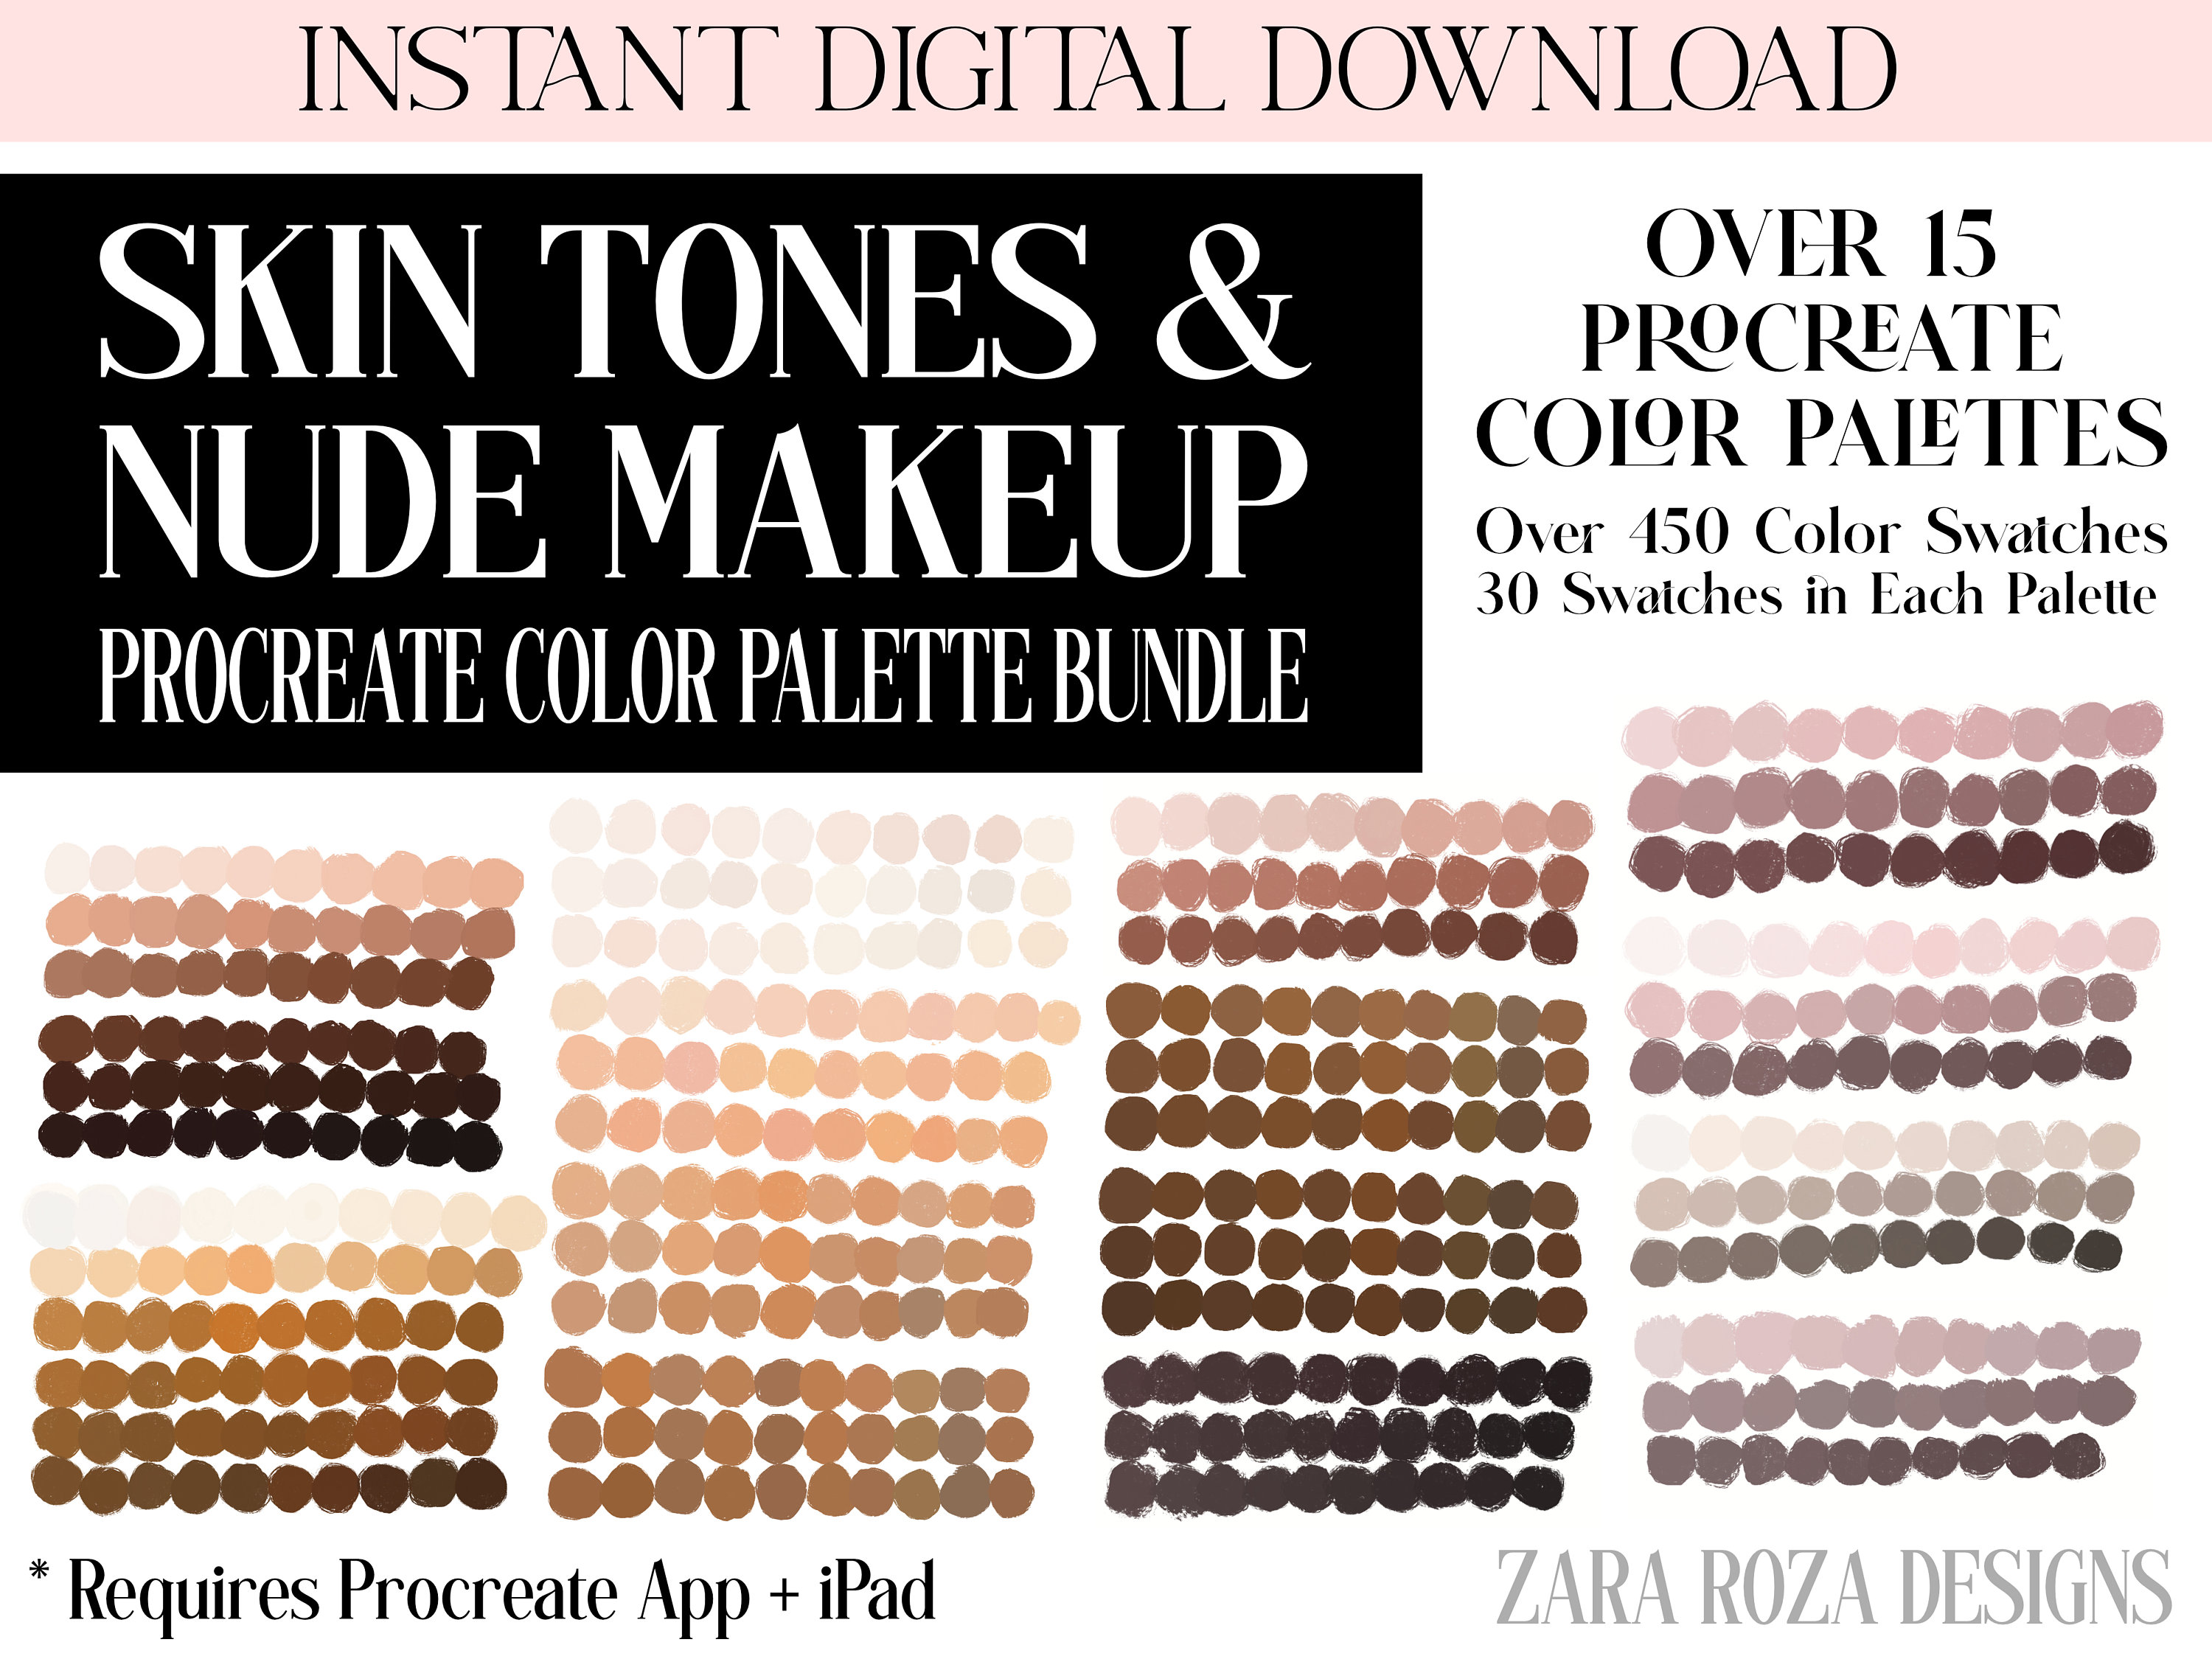 3. 10 Chic Skin Tone Nail Art Ideas - wide 5